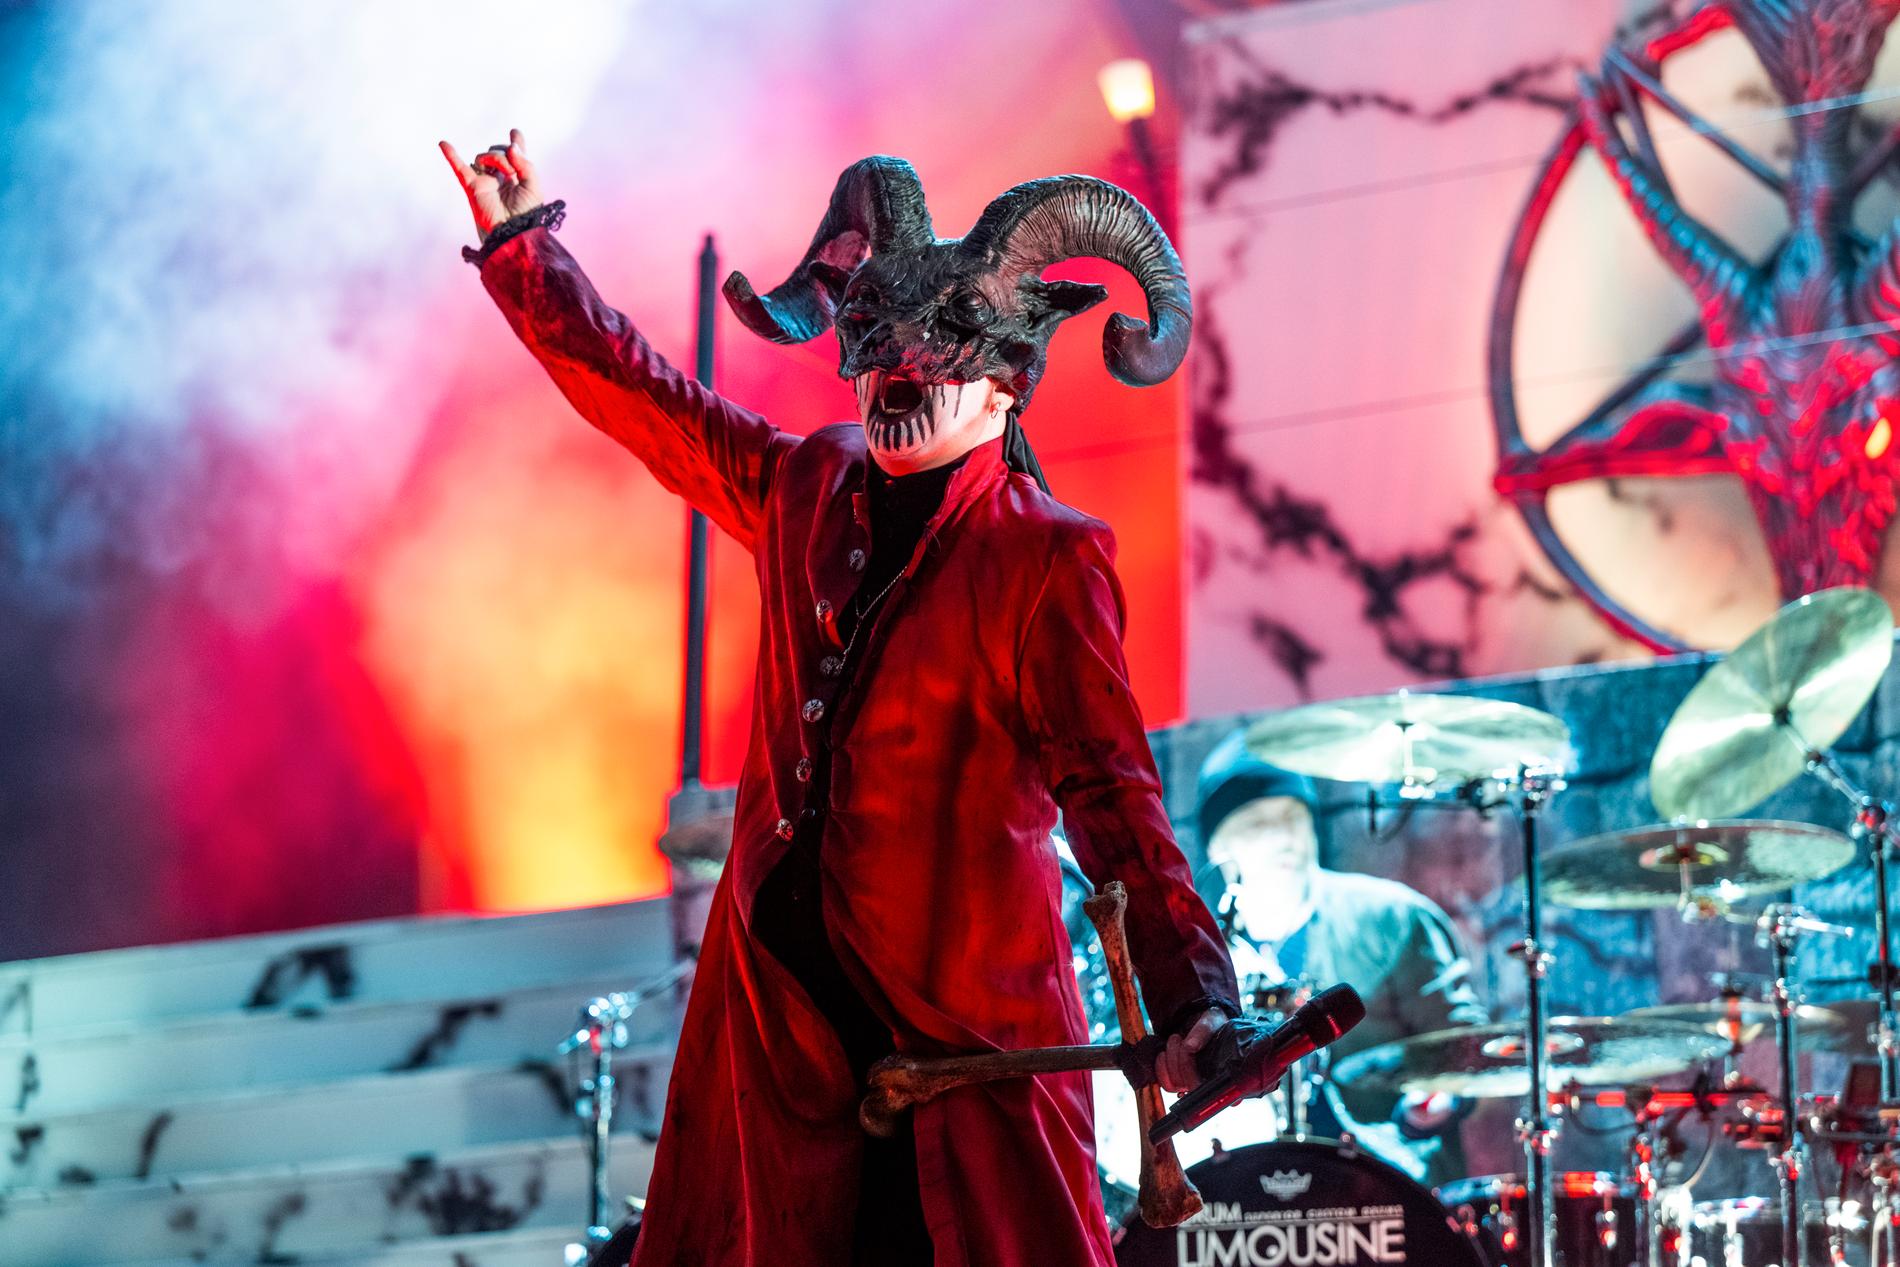 Inför en hänförd och lojal publik gjorde det ikoniska heavy metal-bandet Mercyful Fate efterlängtad comeback på svensk mark efter 23 års dvala.